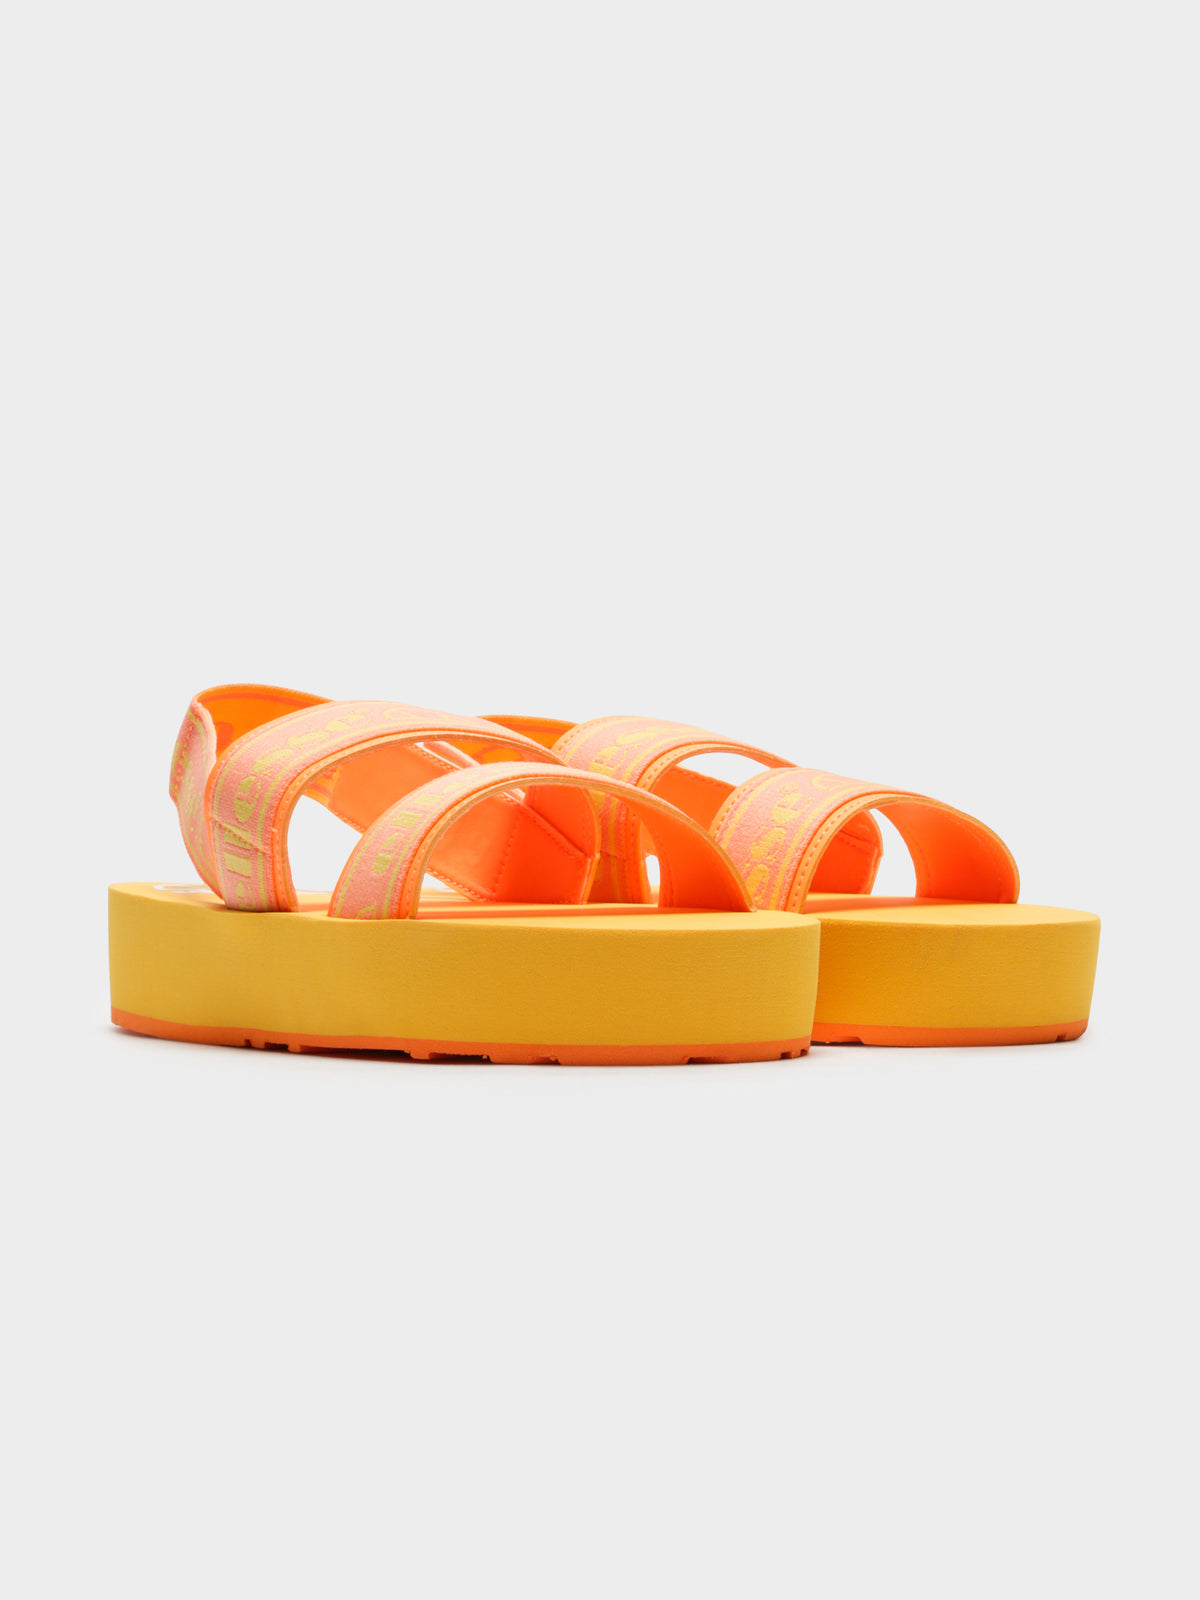 Ellesse Giglio Sandals in Orange | Neon Orange